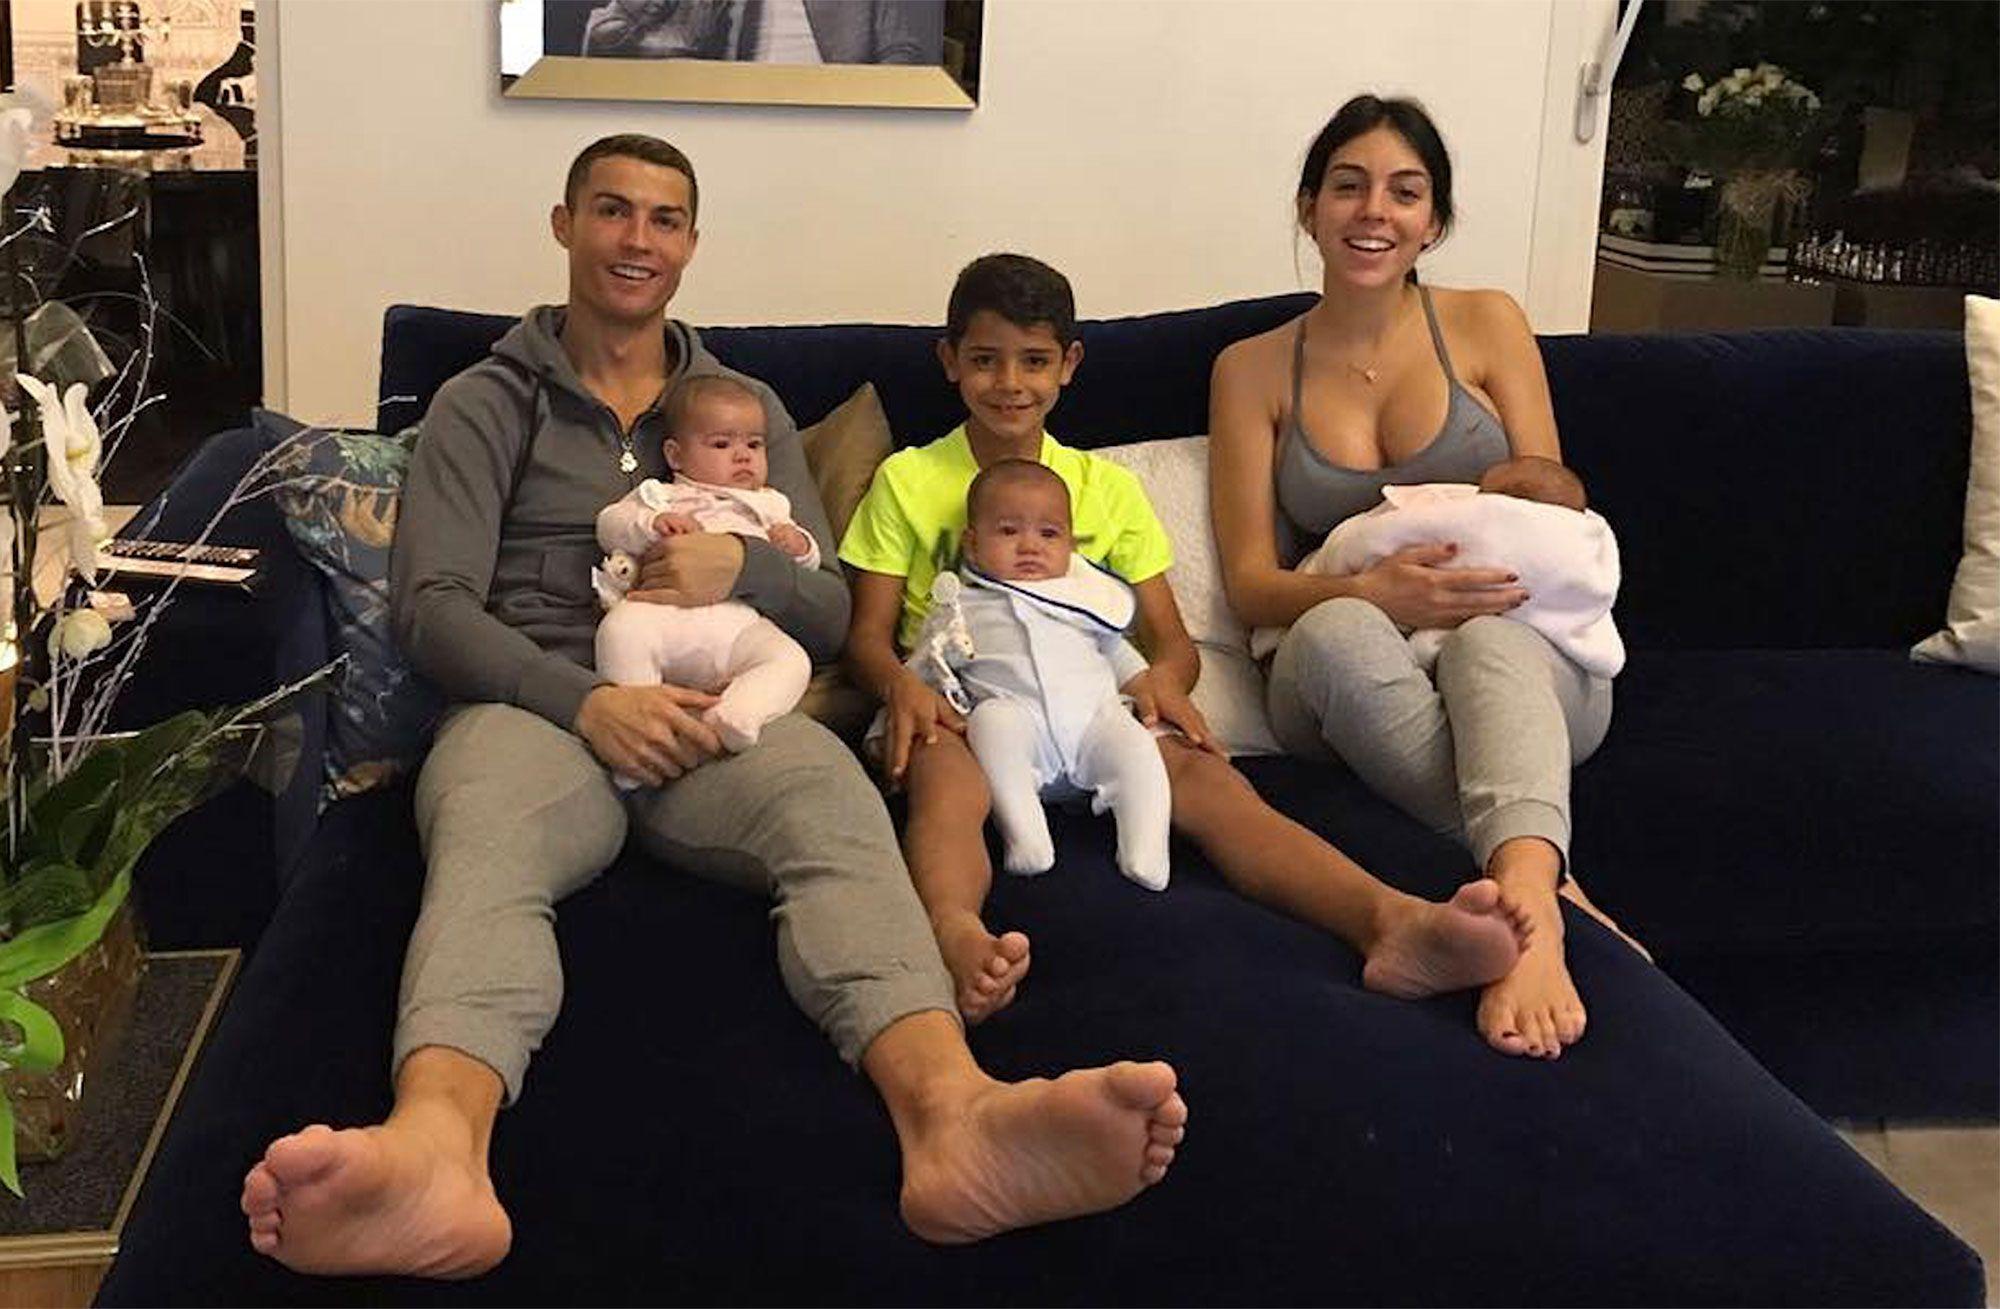 Cristiano Ronaldo and Georgina Rodriguez Pose with Their Kids